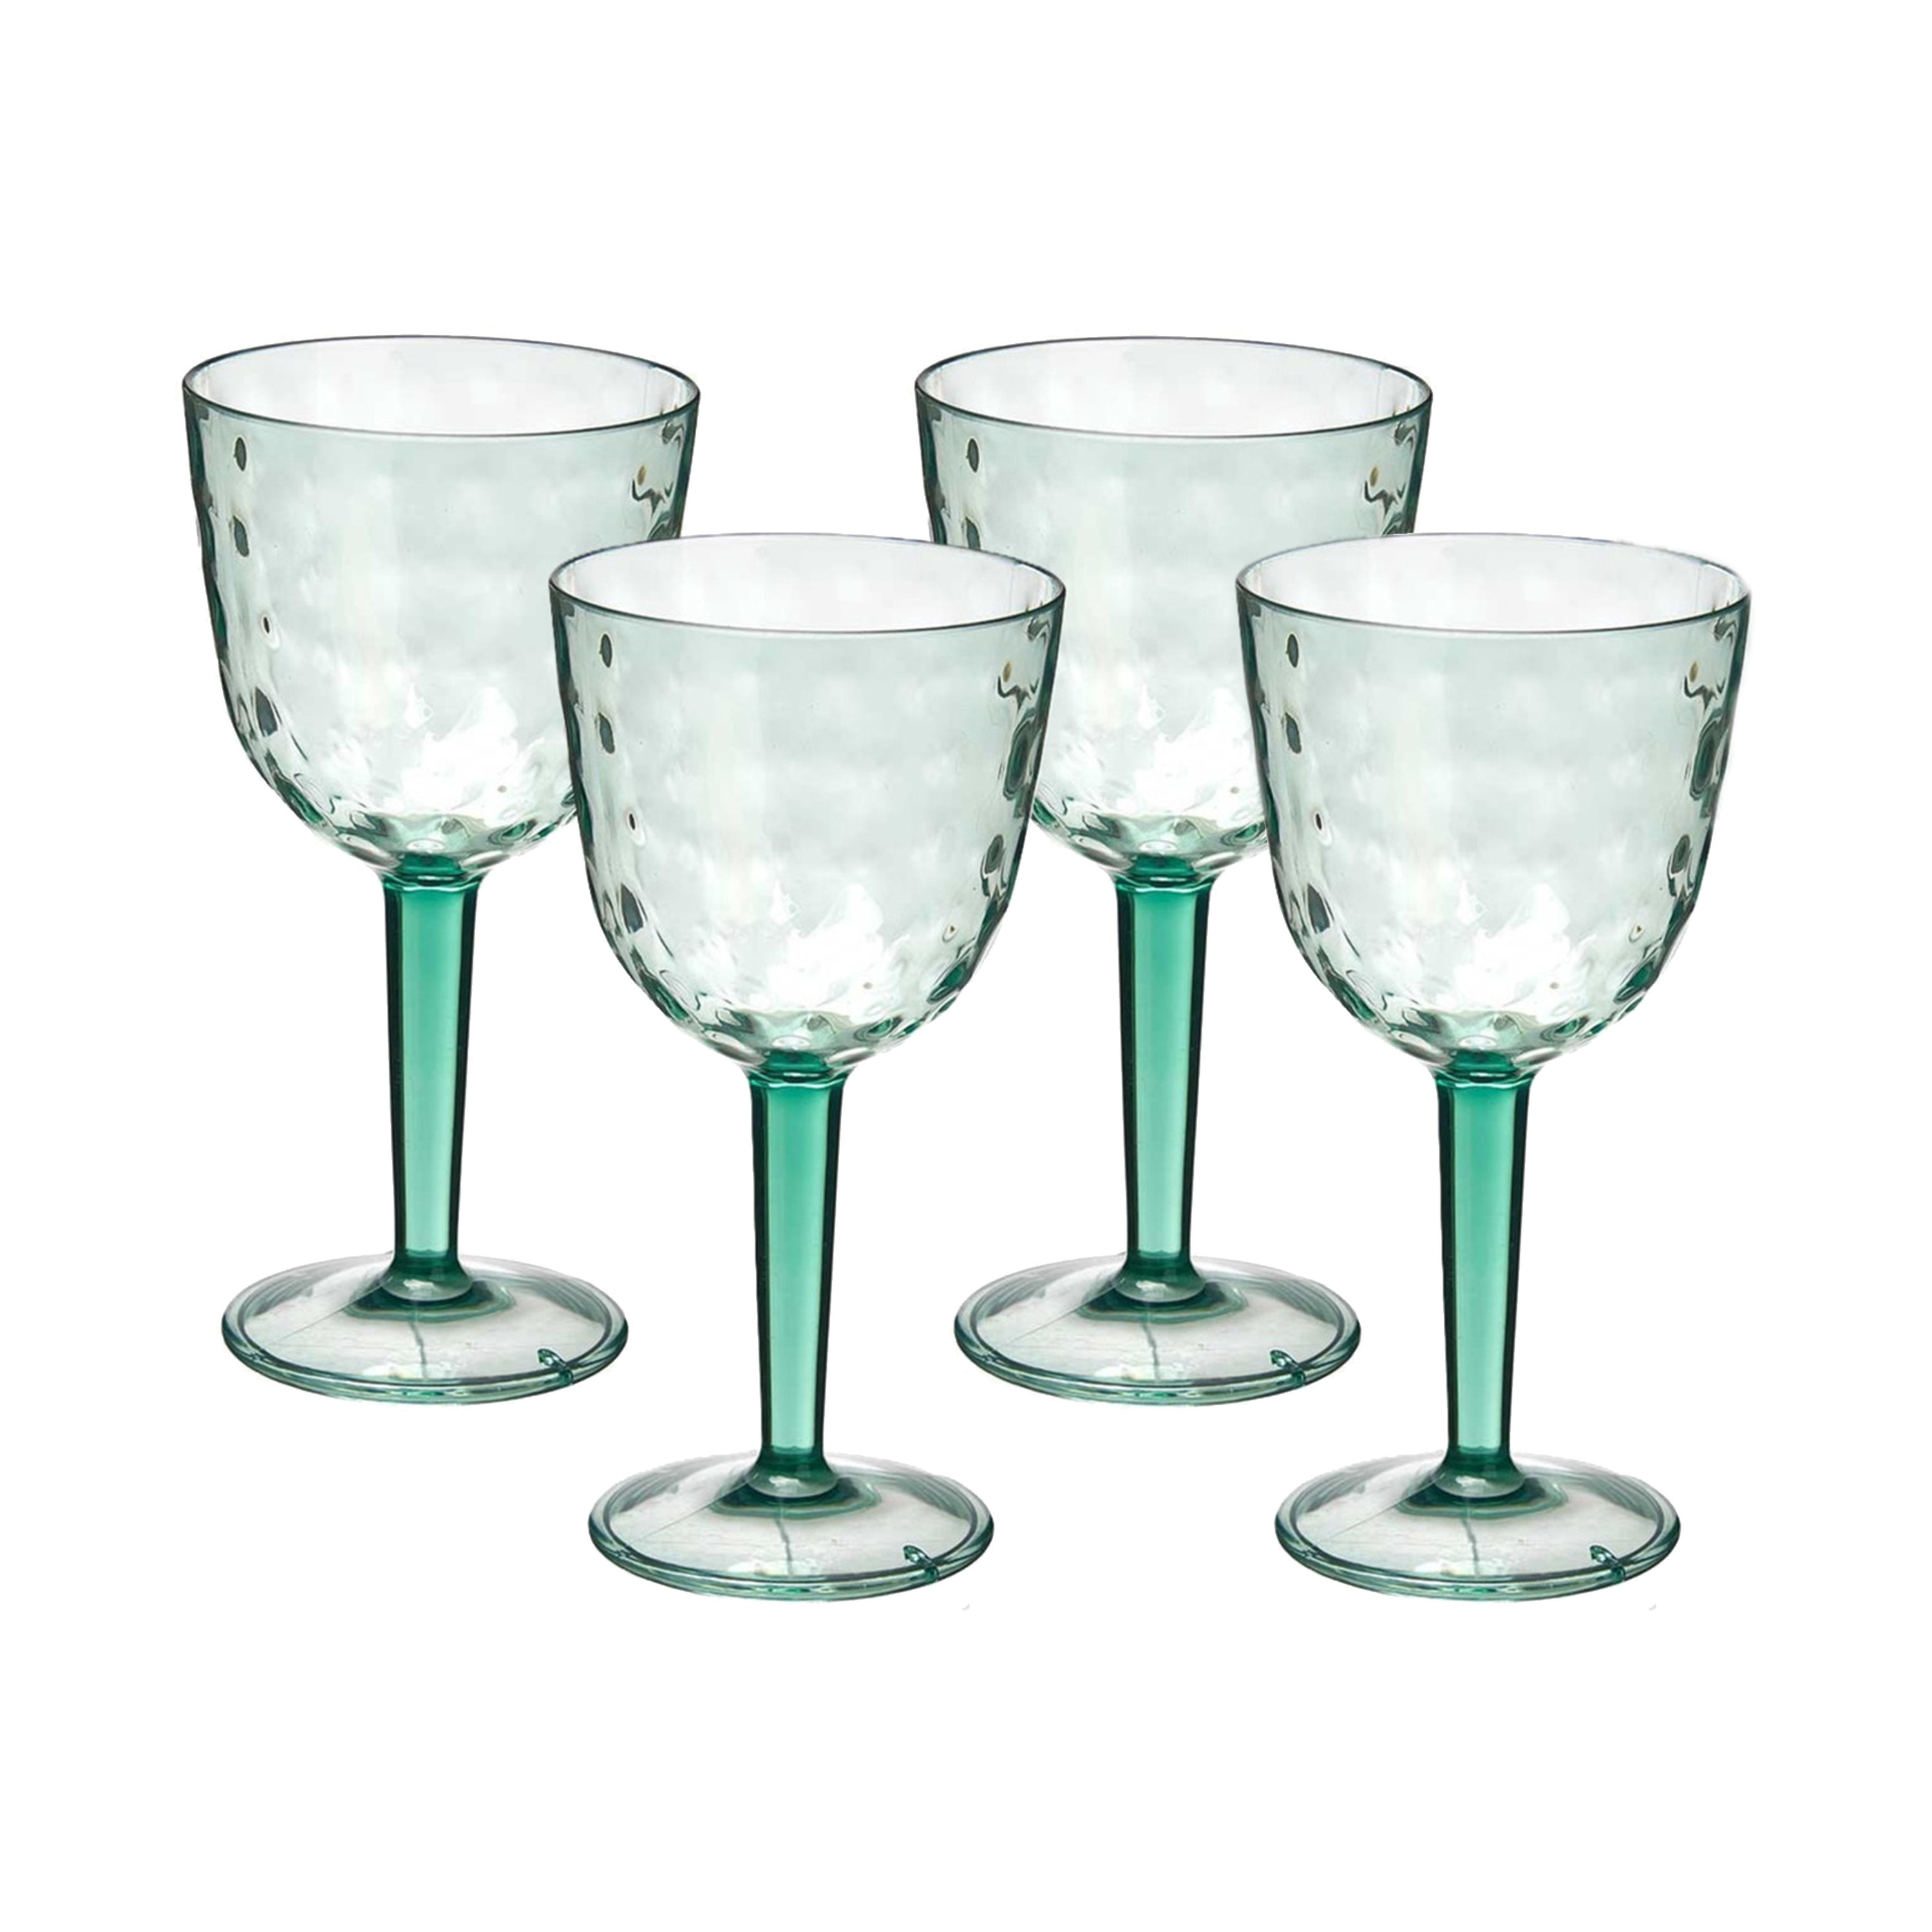 Leknes Wijnglas Gloria - 4x - transparant groen - onbreekbaar kunststof - 450 ml -